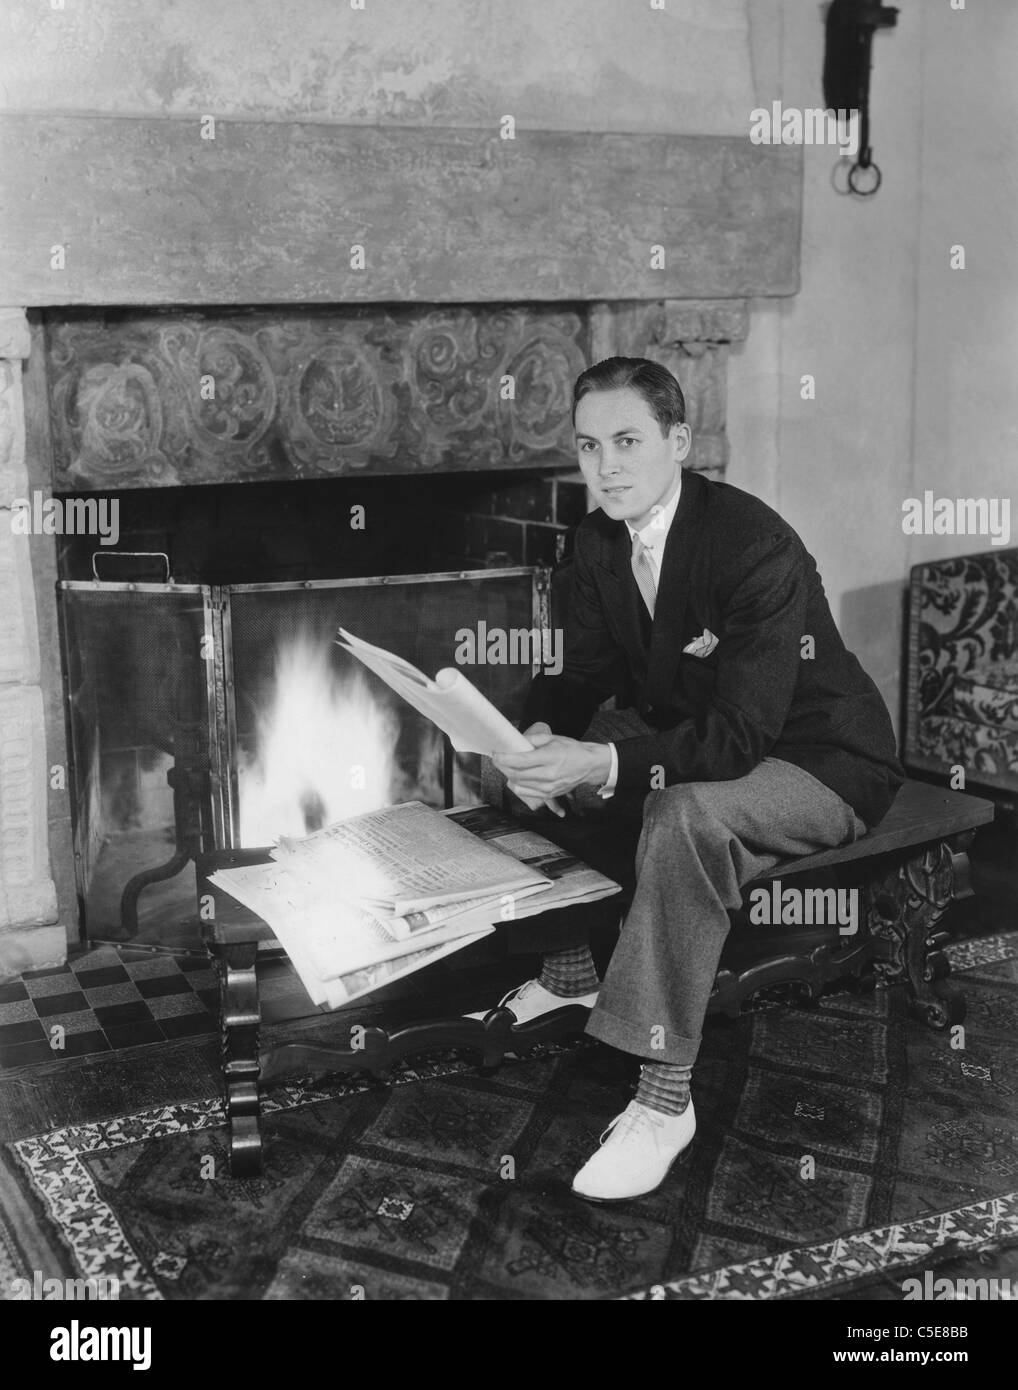 Fireside reading Stock Photo